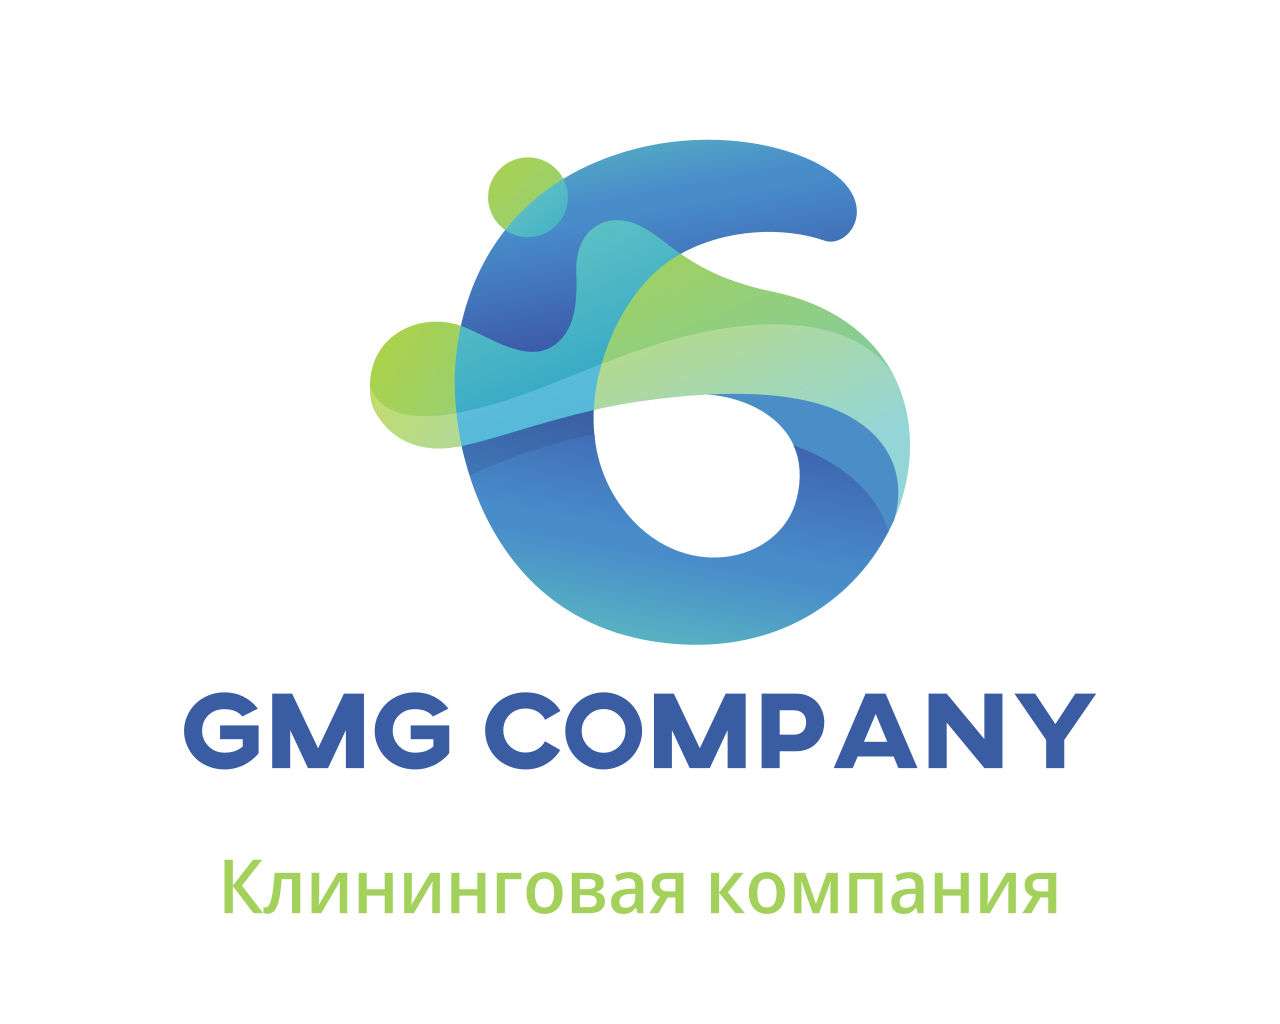 GMG COMPANY